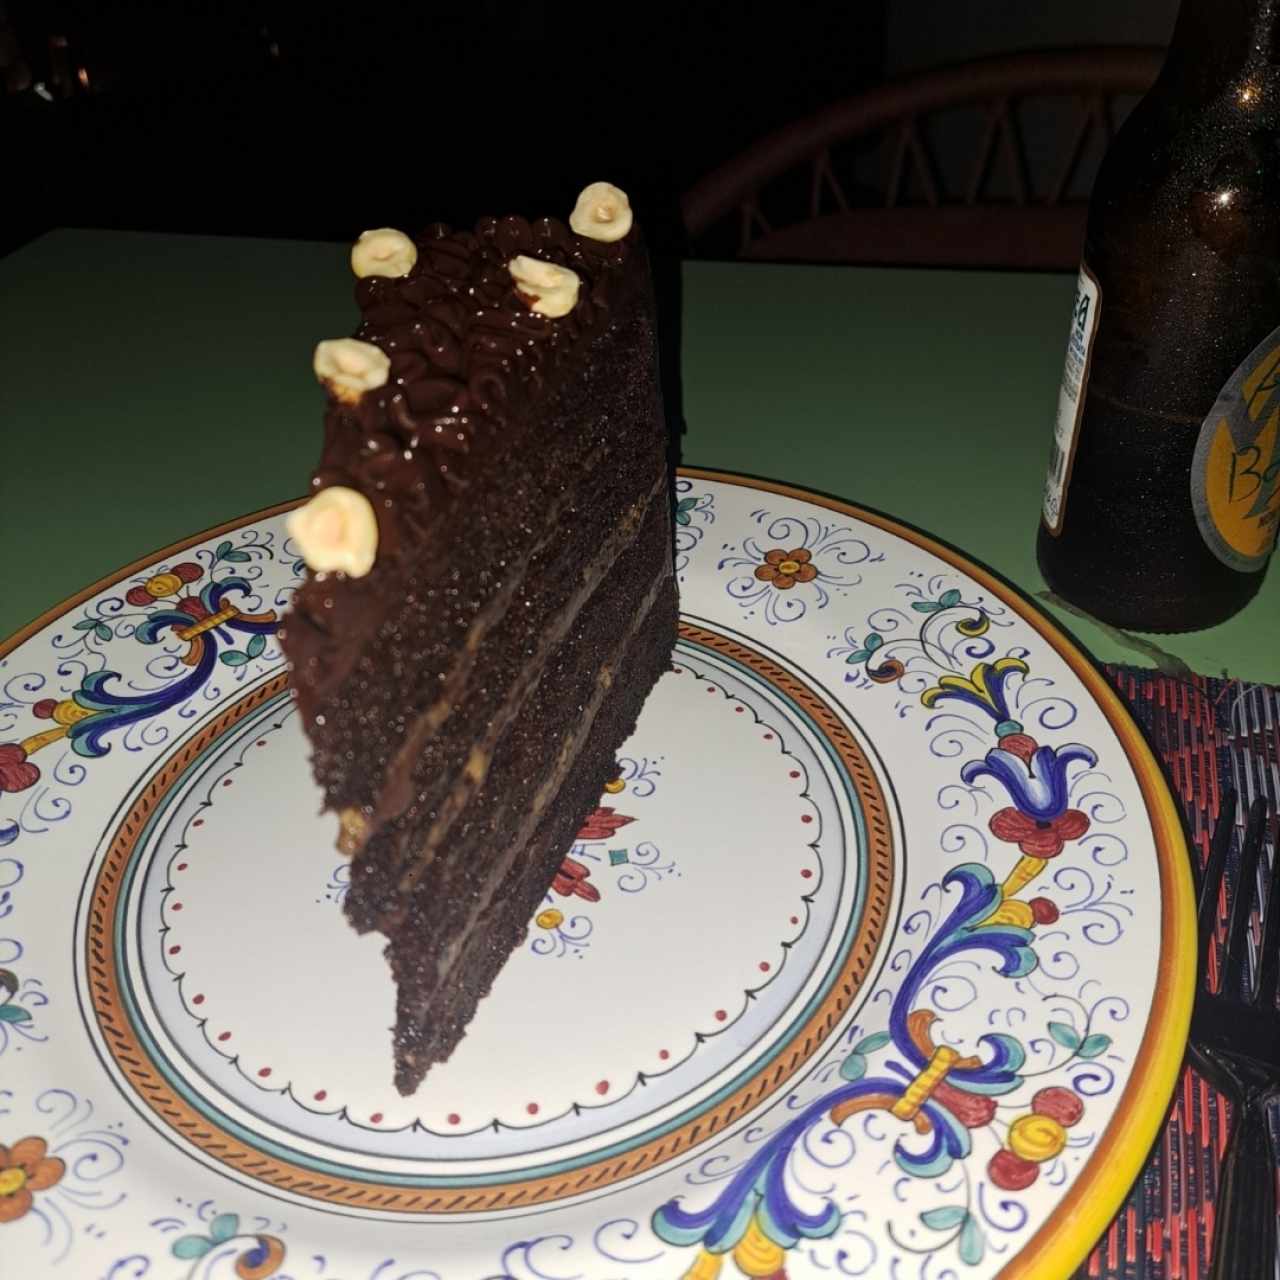 DOLCI - Piemontese Chocolate Cake